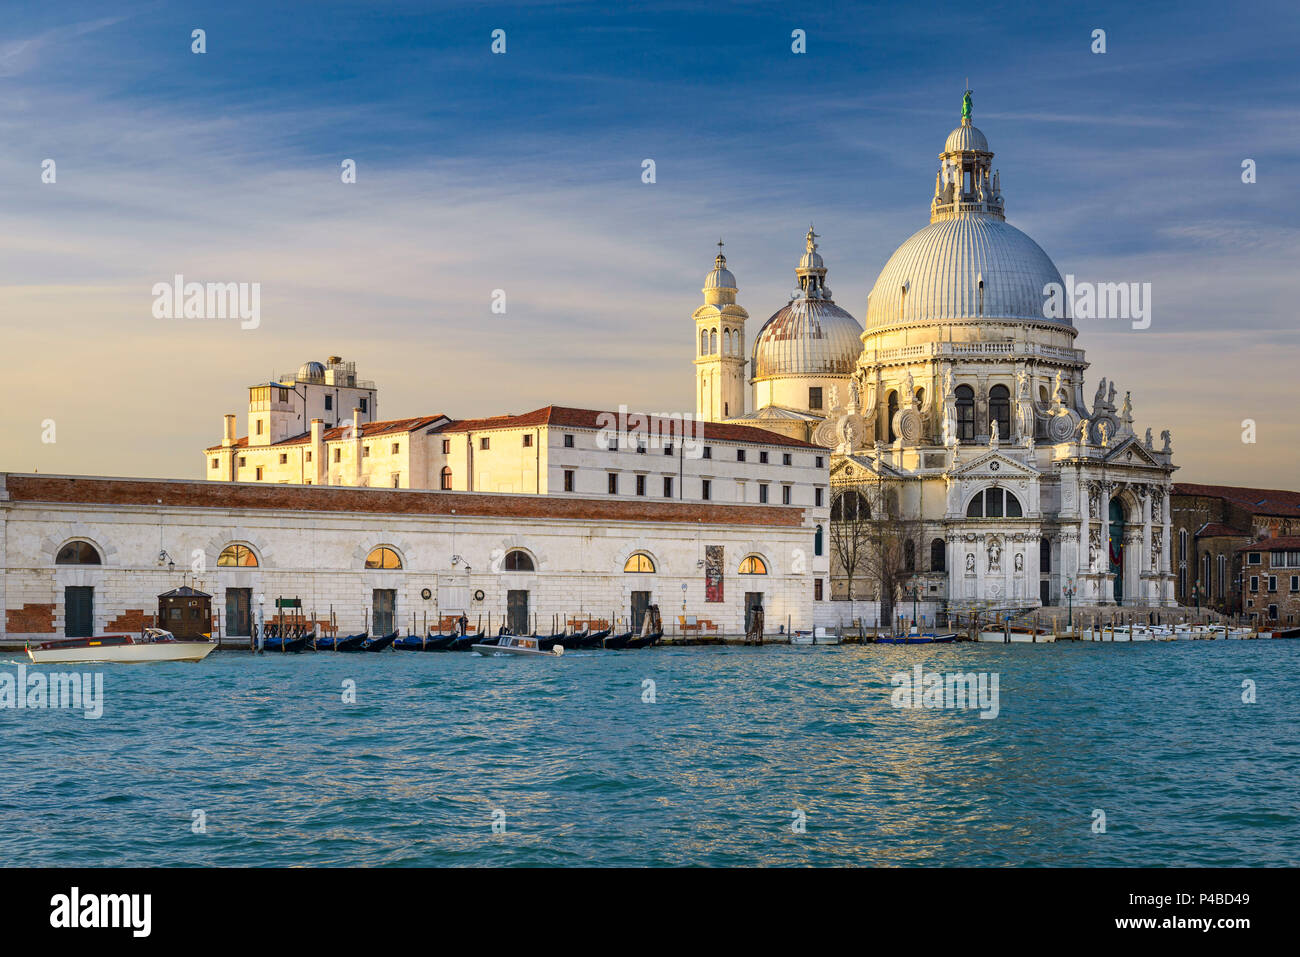 Grand Canal with Basilica Santa Maria della Salute in Venice, Italy Stock Photo